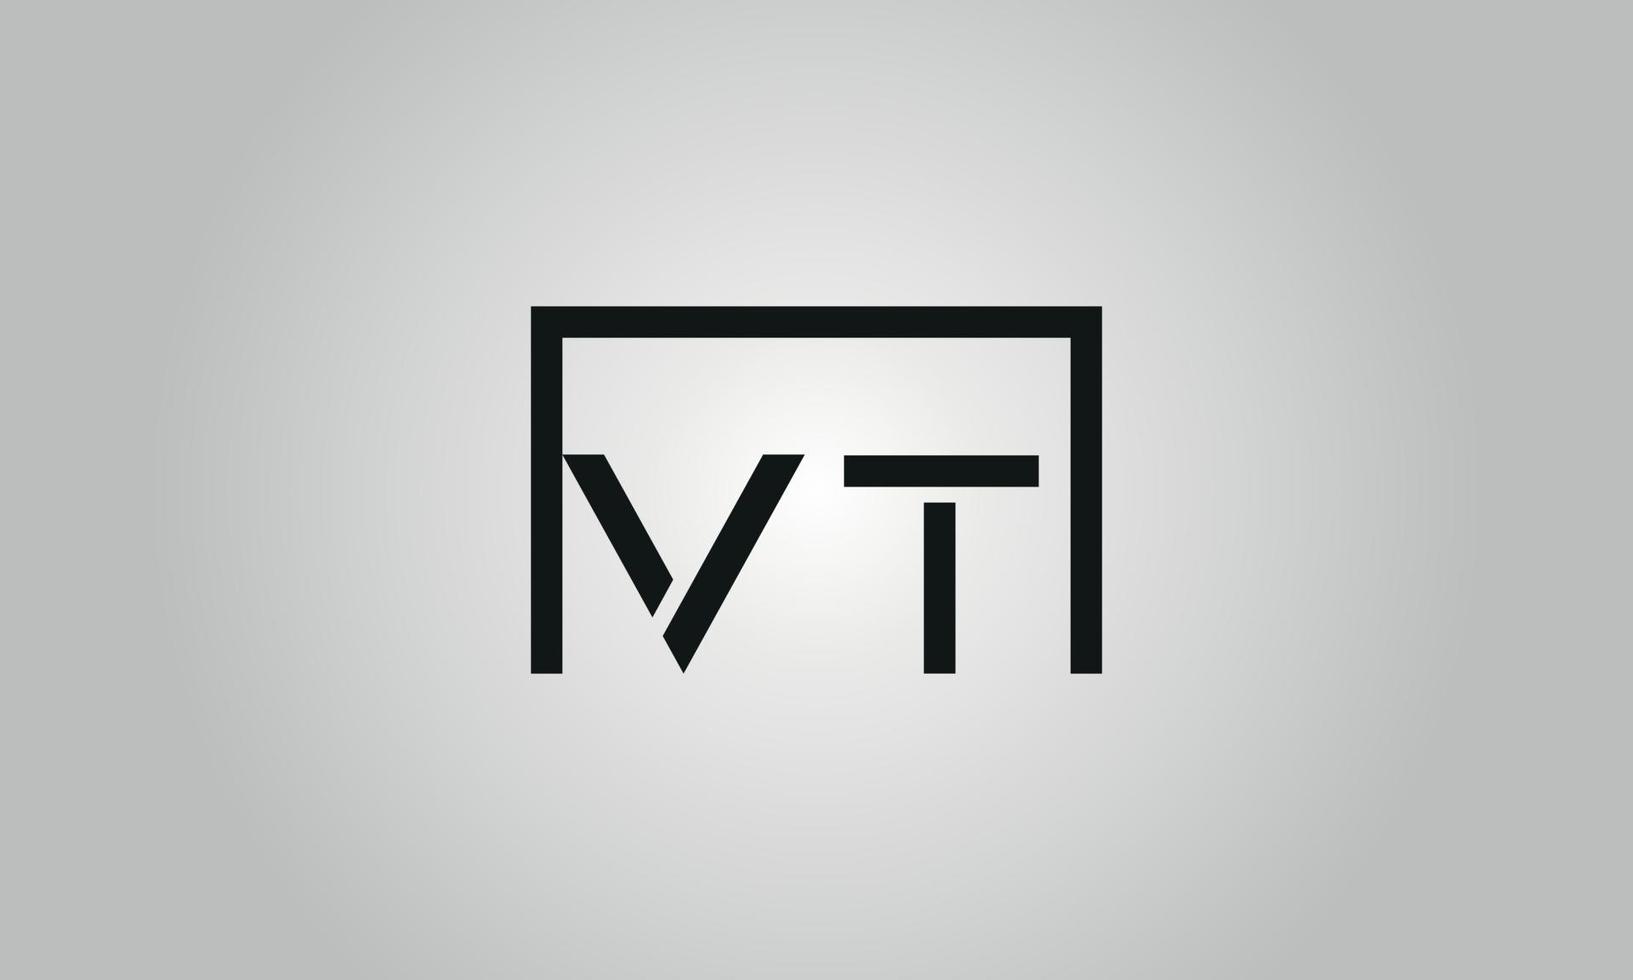 création de logo lettre vt. logo vt avec forme carrée dans le modèle vectoriel gratuit de couleurs noires.